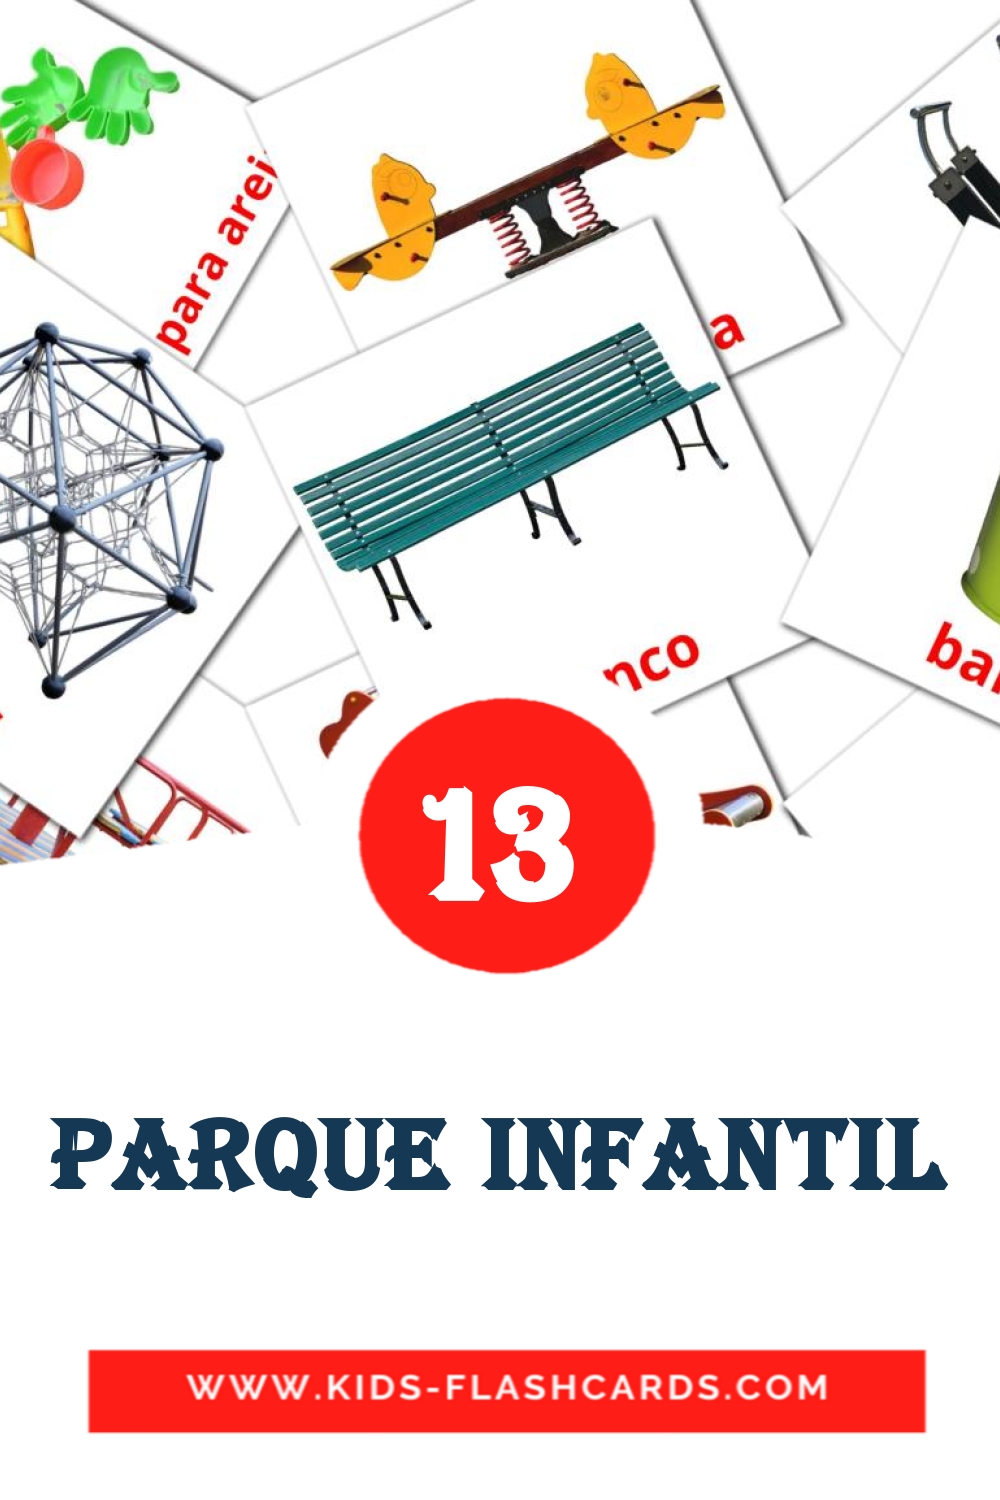 Parque Infantil на португальском для Детского Сада (13 карточек)